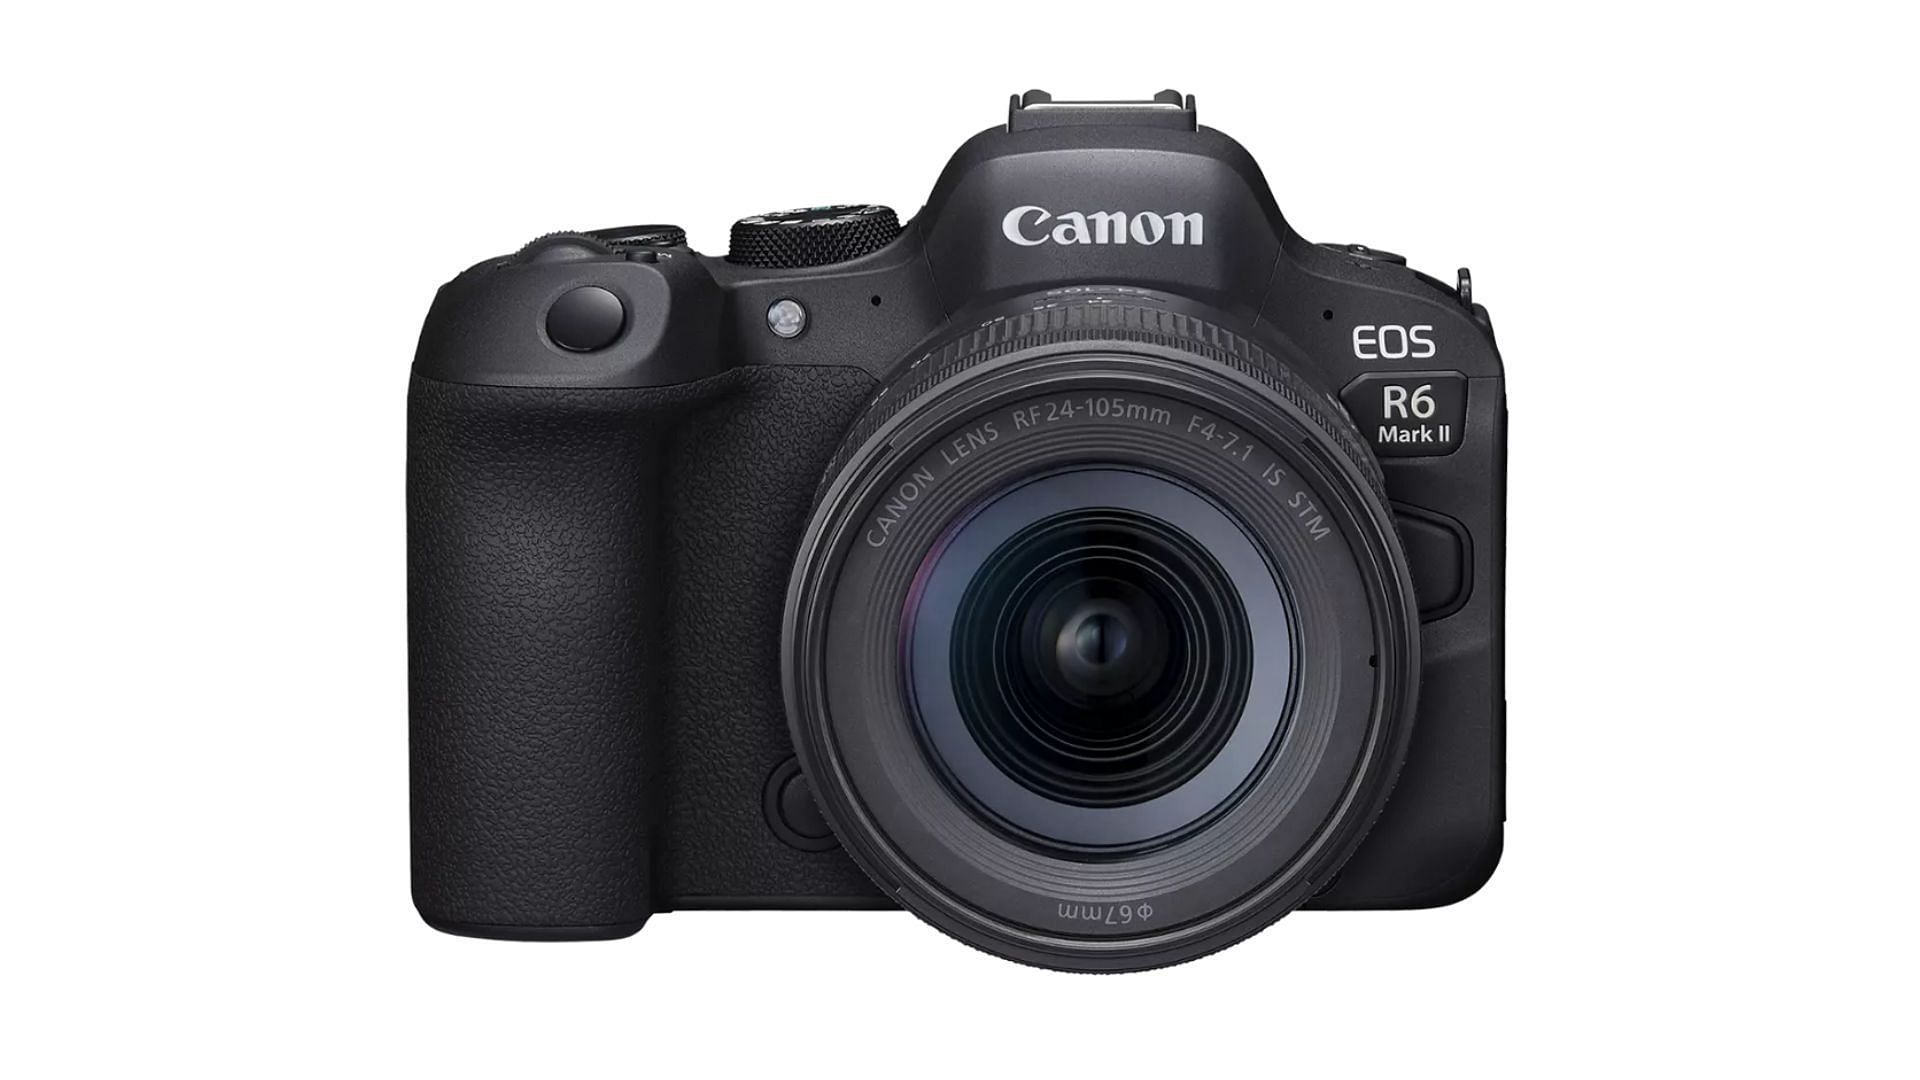 Canon EOS R6 Mark II (Image via Canon USA)